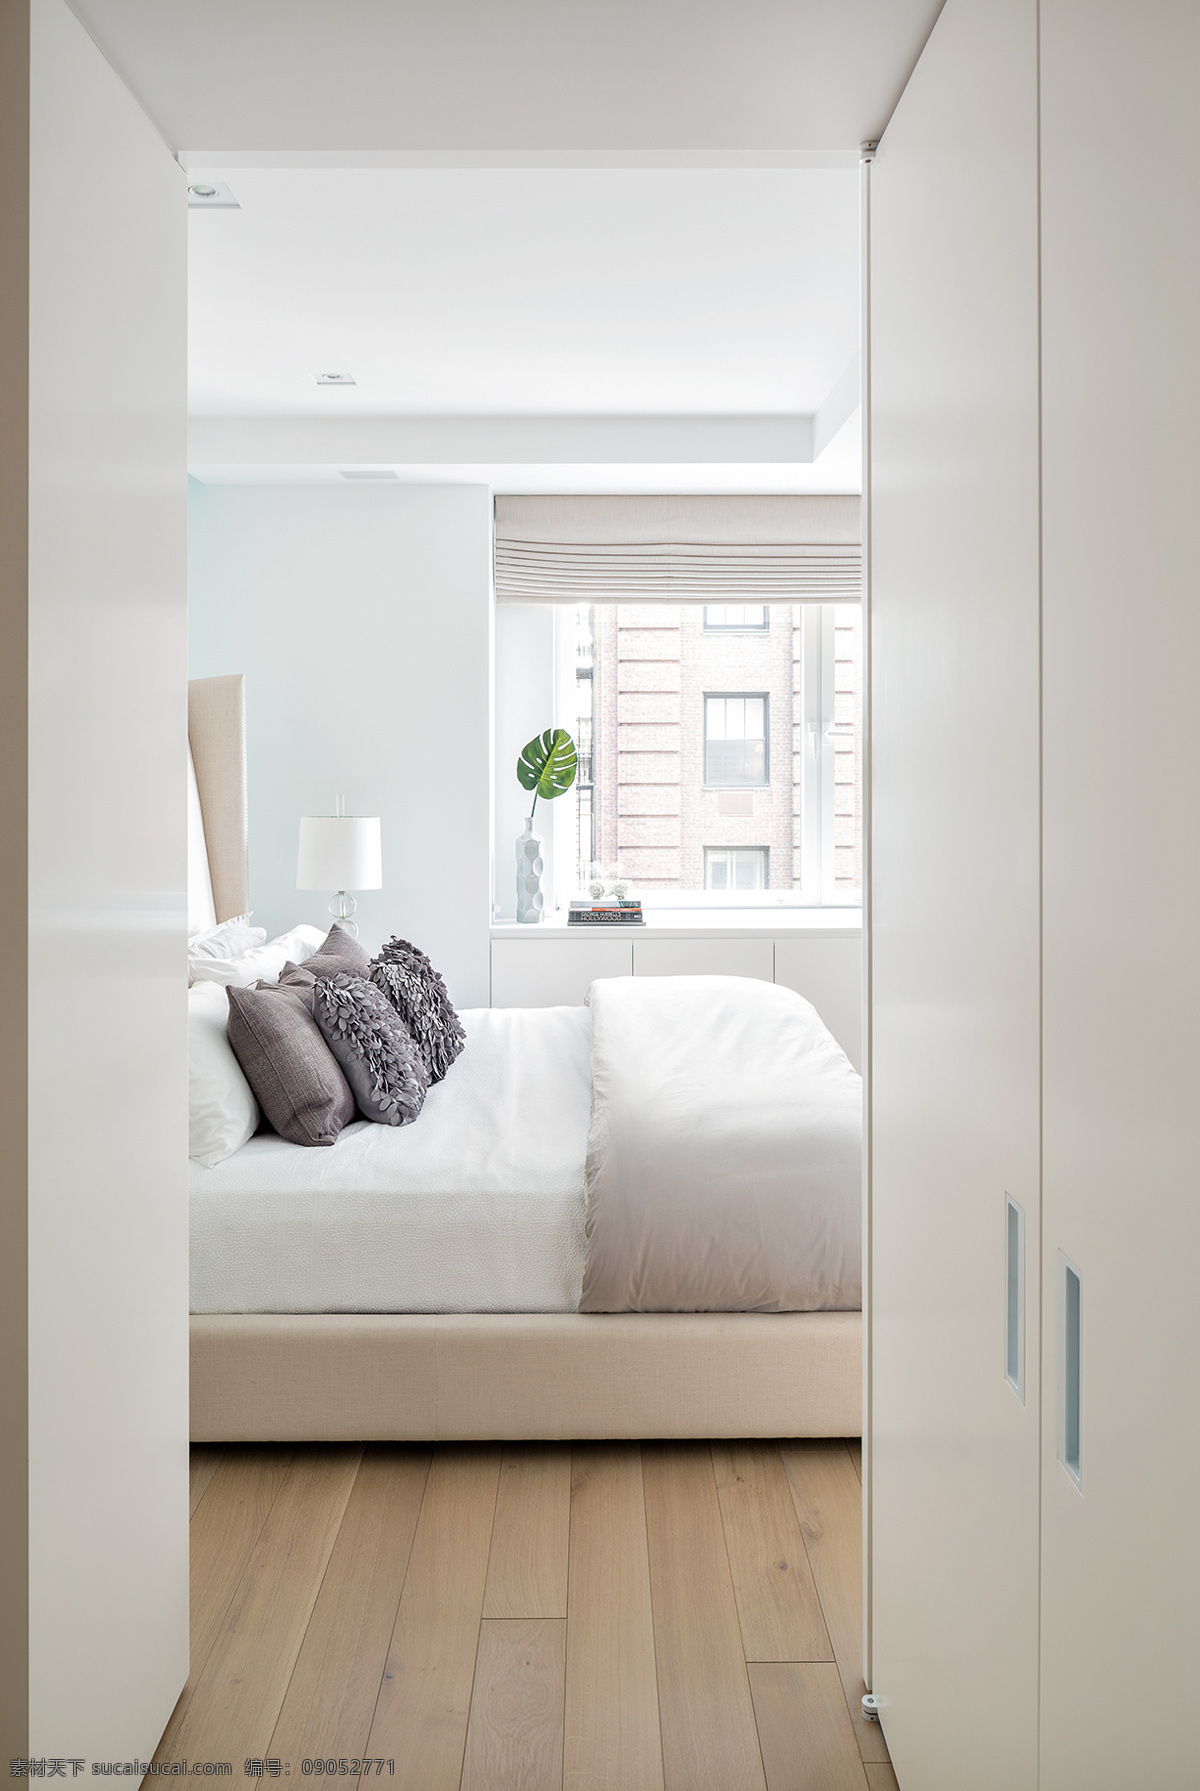 现代 卧室 纯白 室内装修 效果图 白色背景墙 白色床铺 灰色抱枕 森纹地板 卧室装修